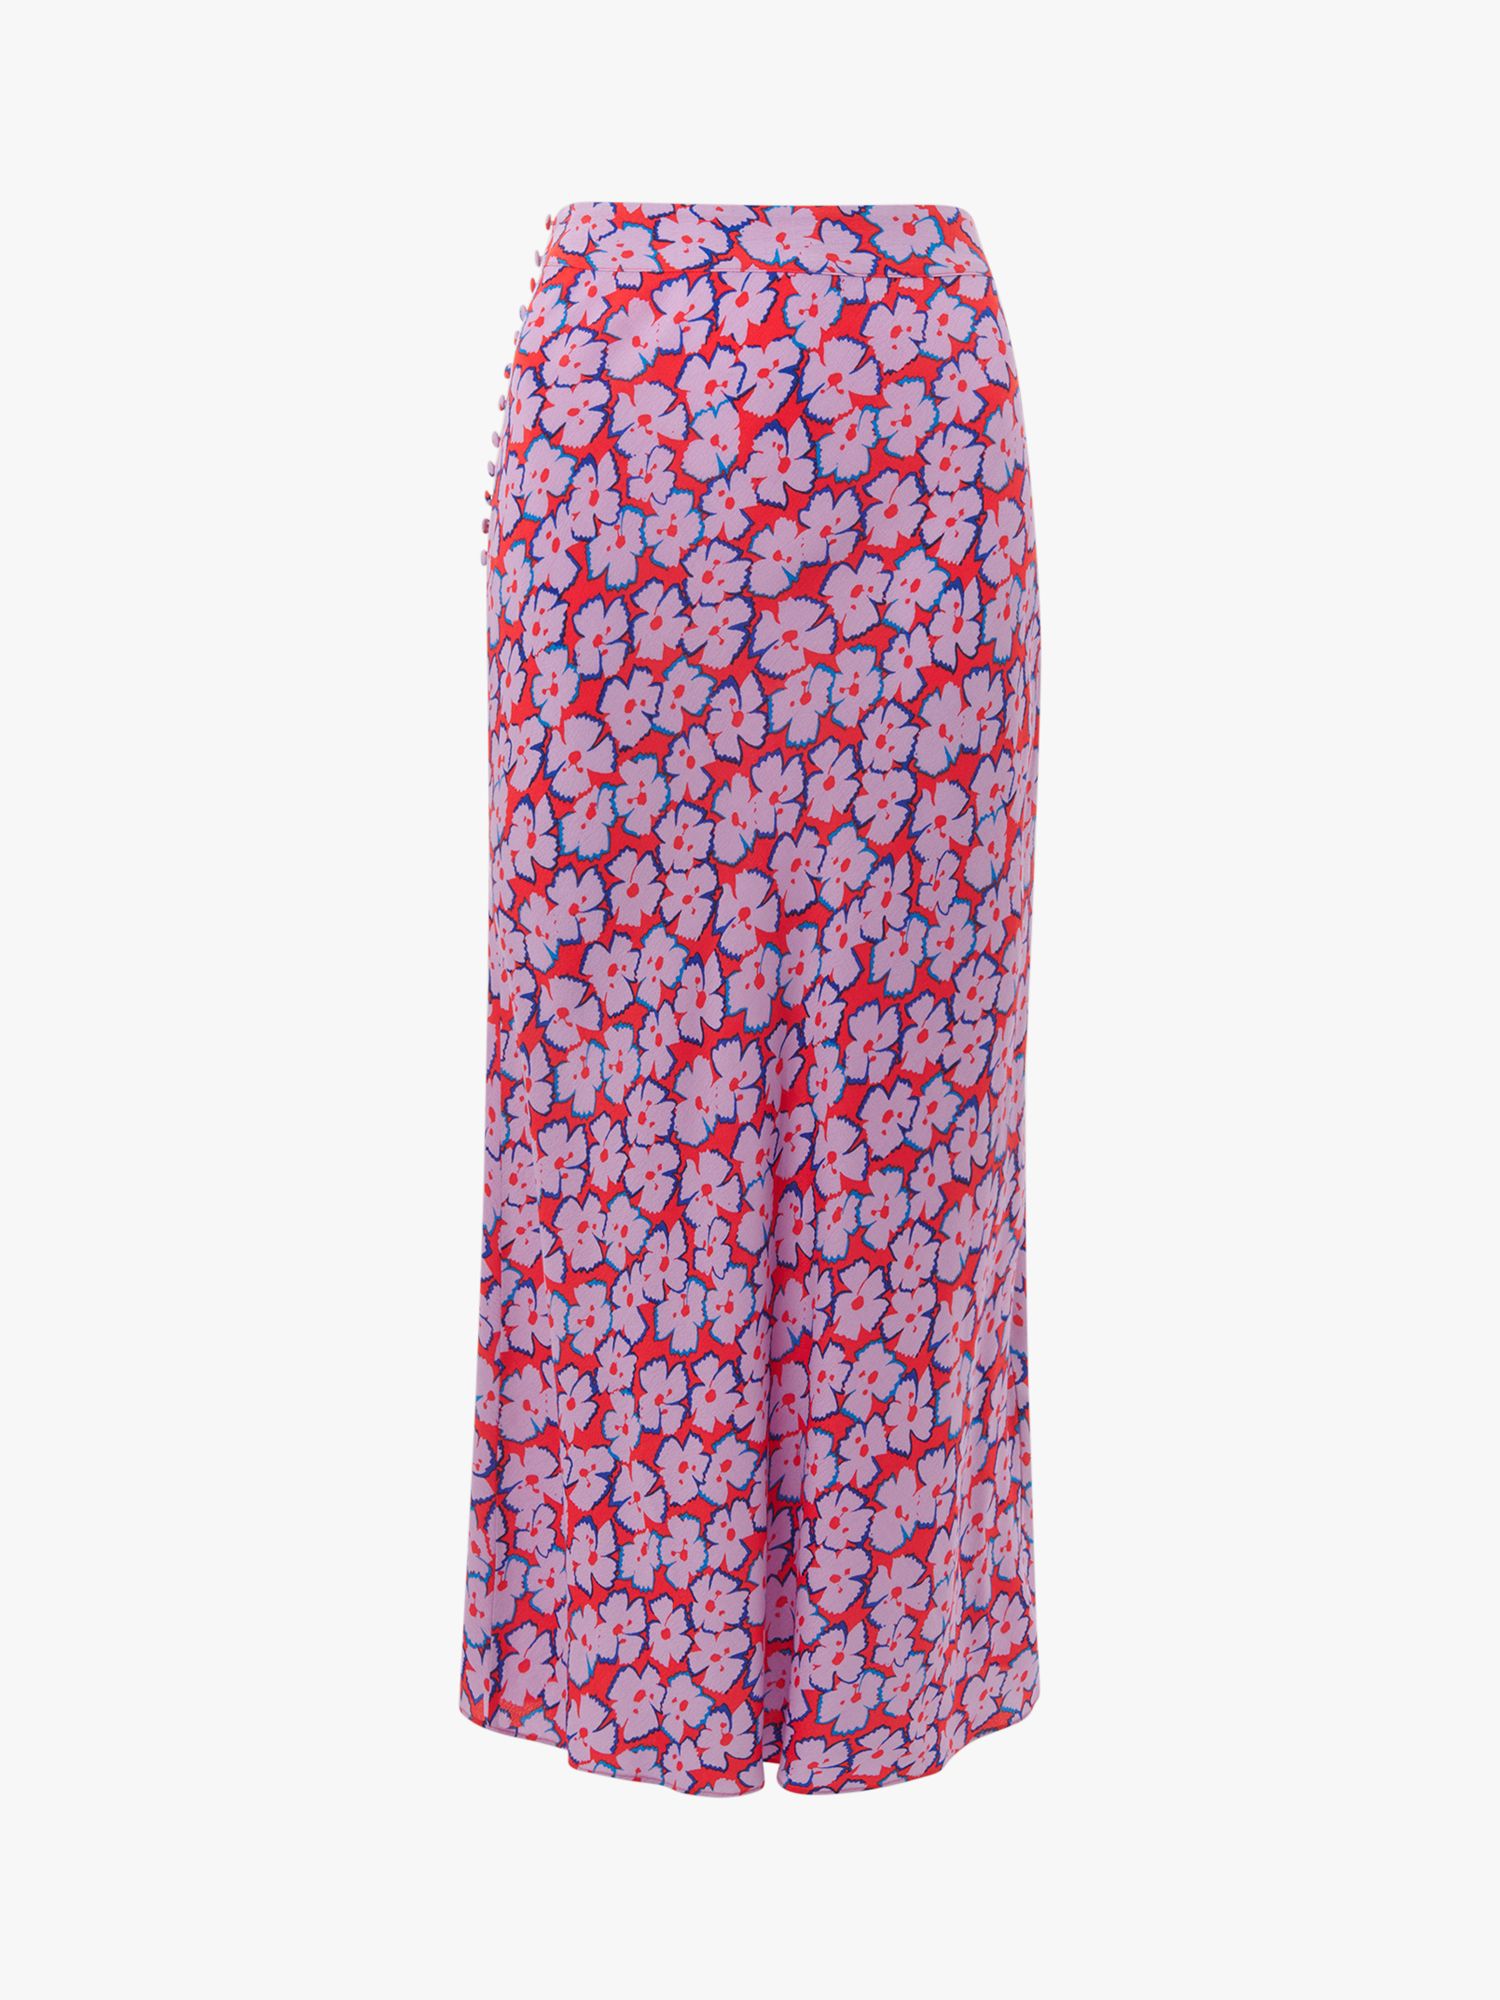 Whistles Farfalle Print Bias Cut Skirt, Multi at John Lewis & Partners